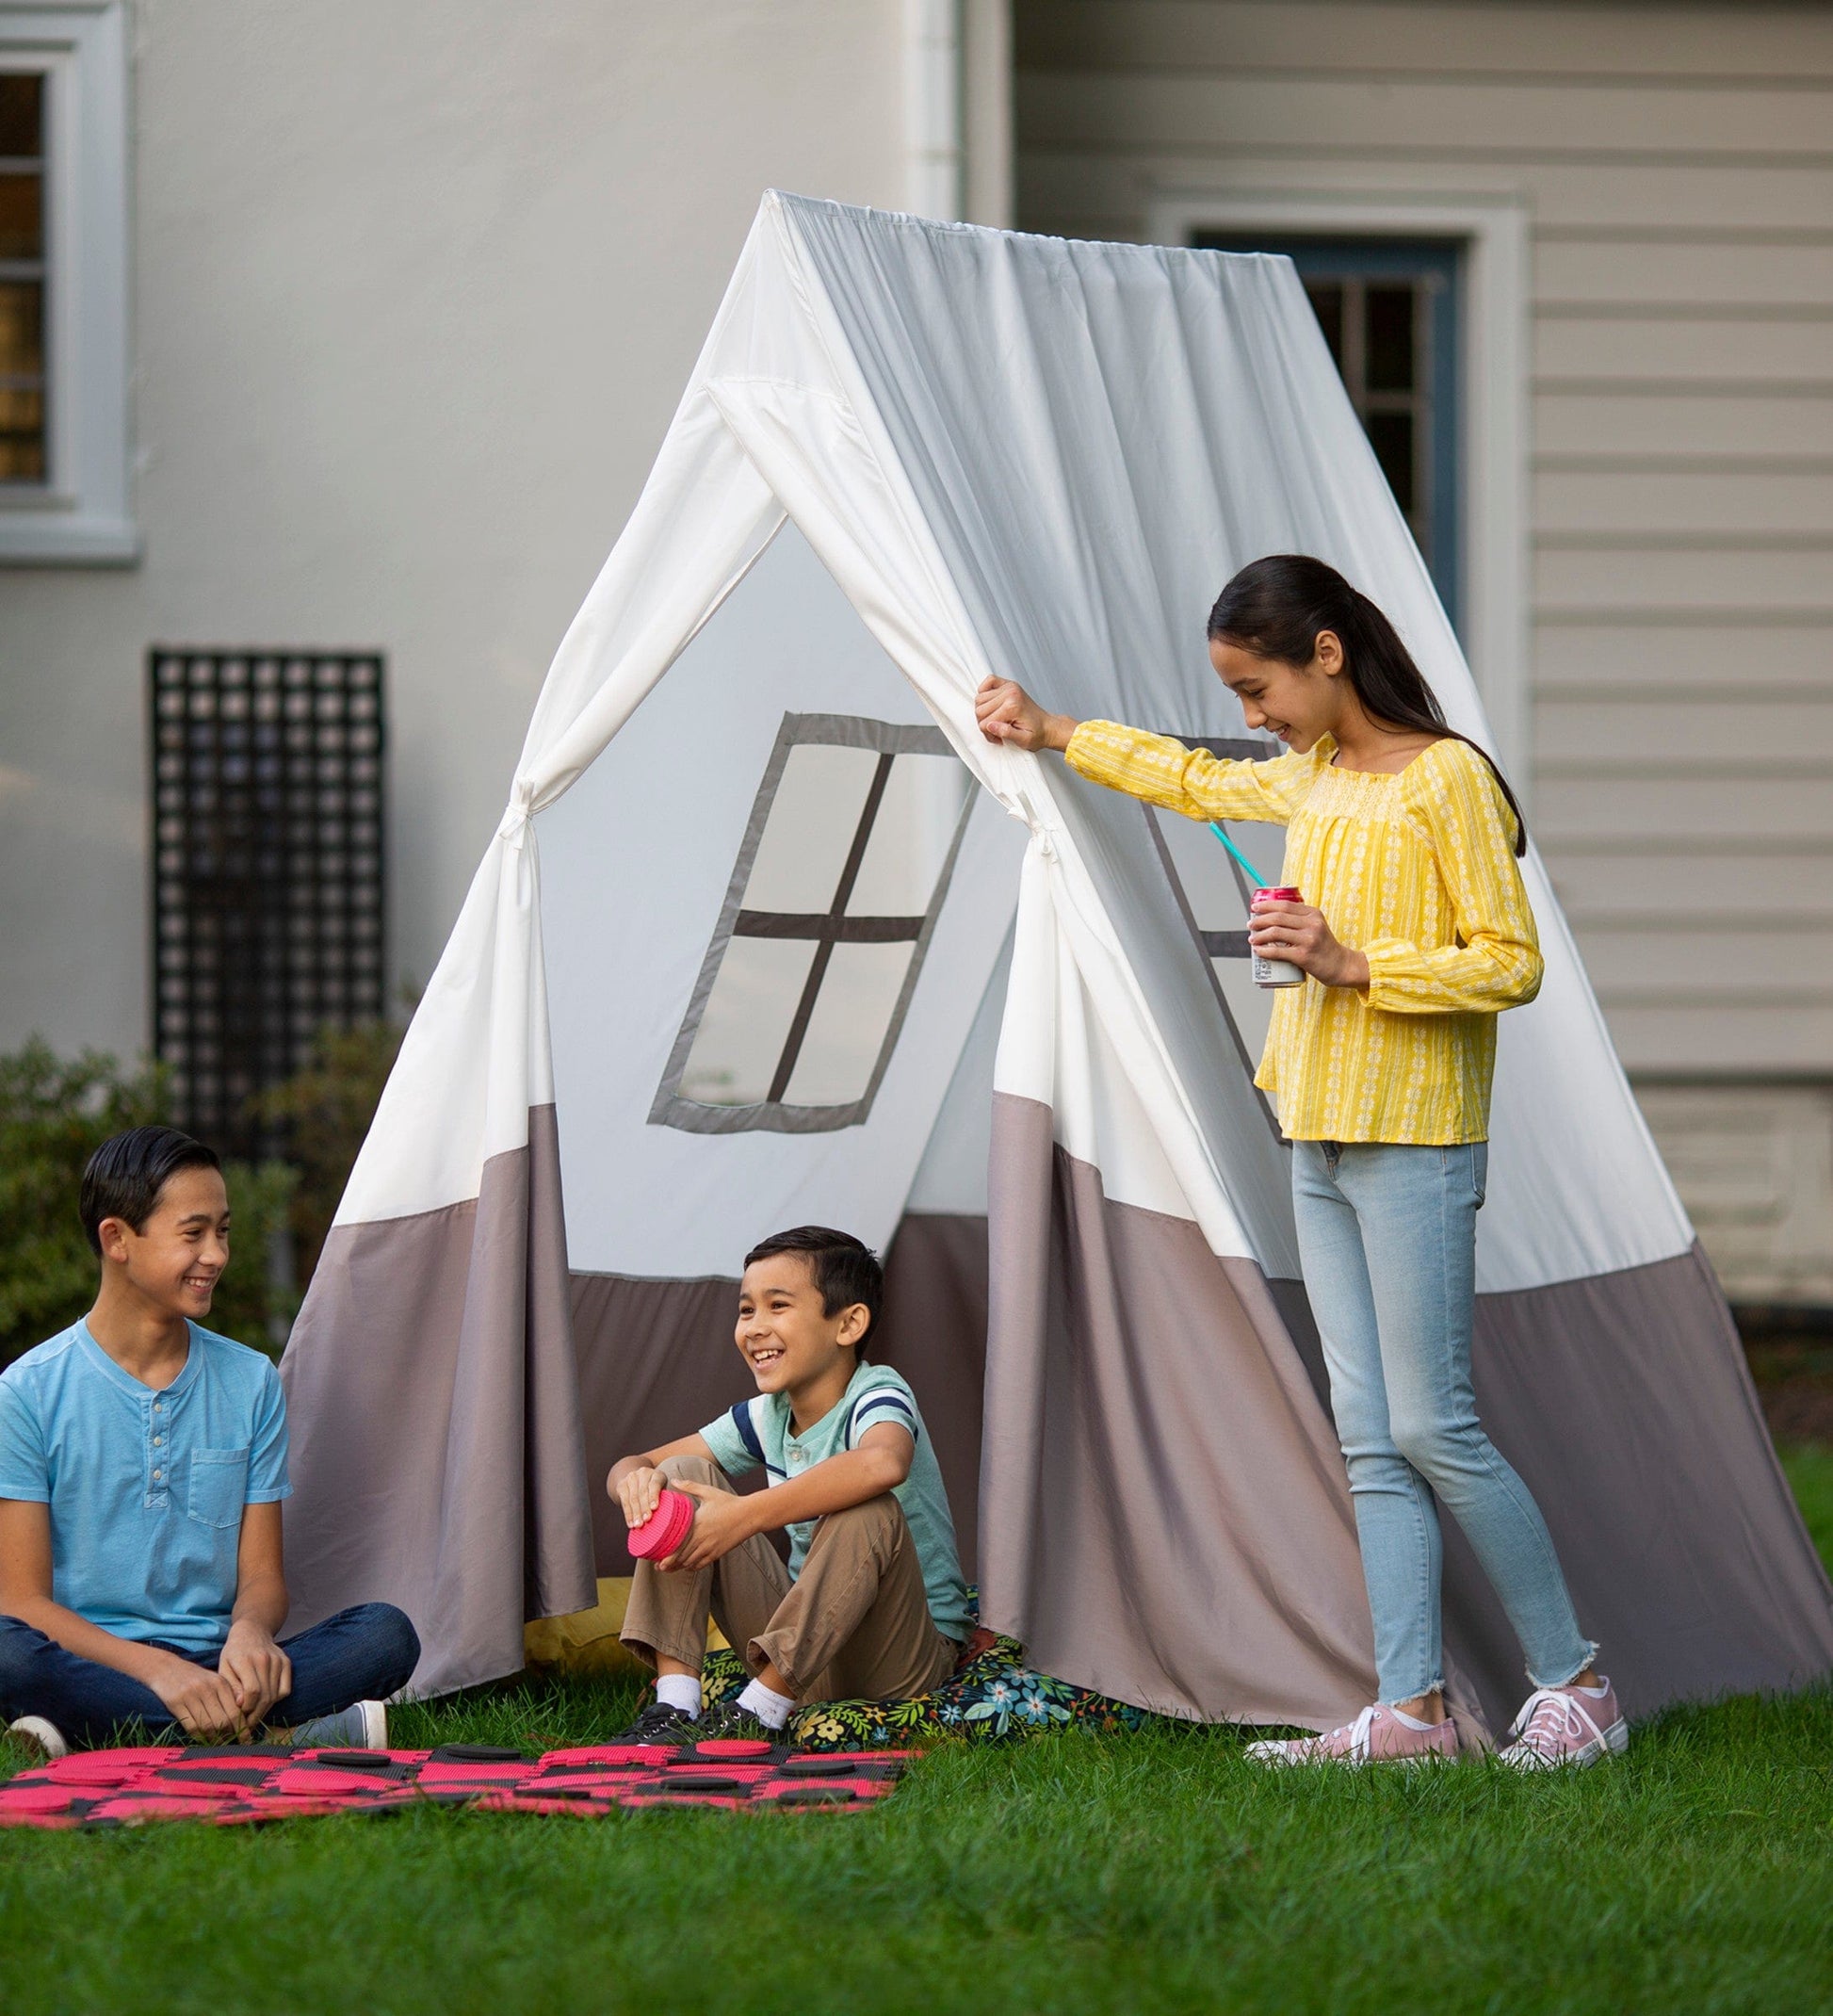 Patio, Camp and Picnic Indoor/Outdoor Door Mat 2 ft. by 3 ft. 6 in